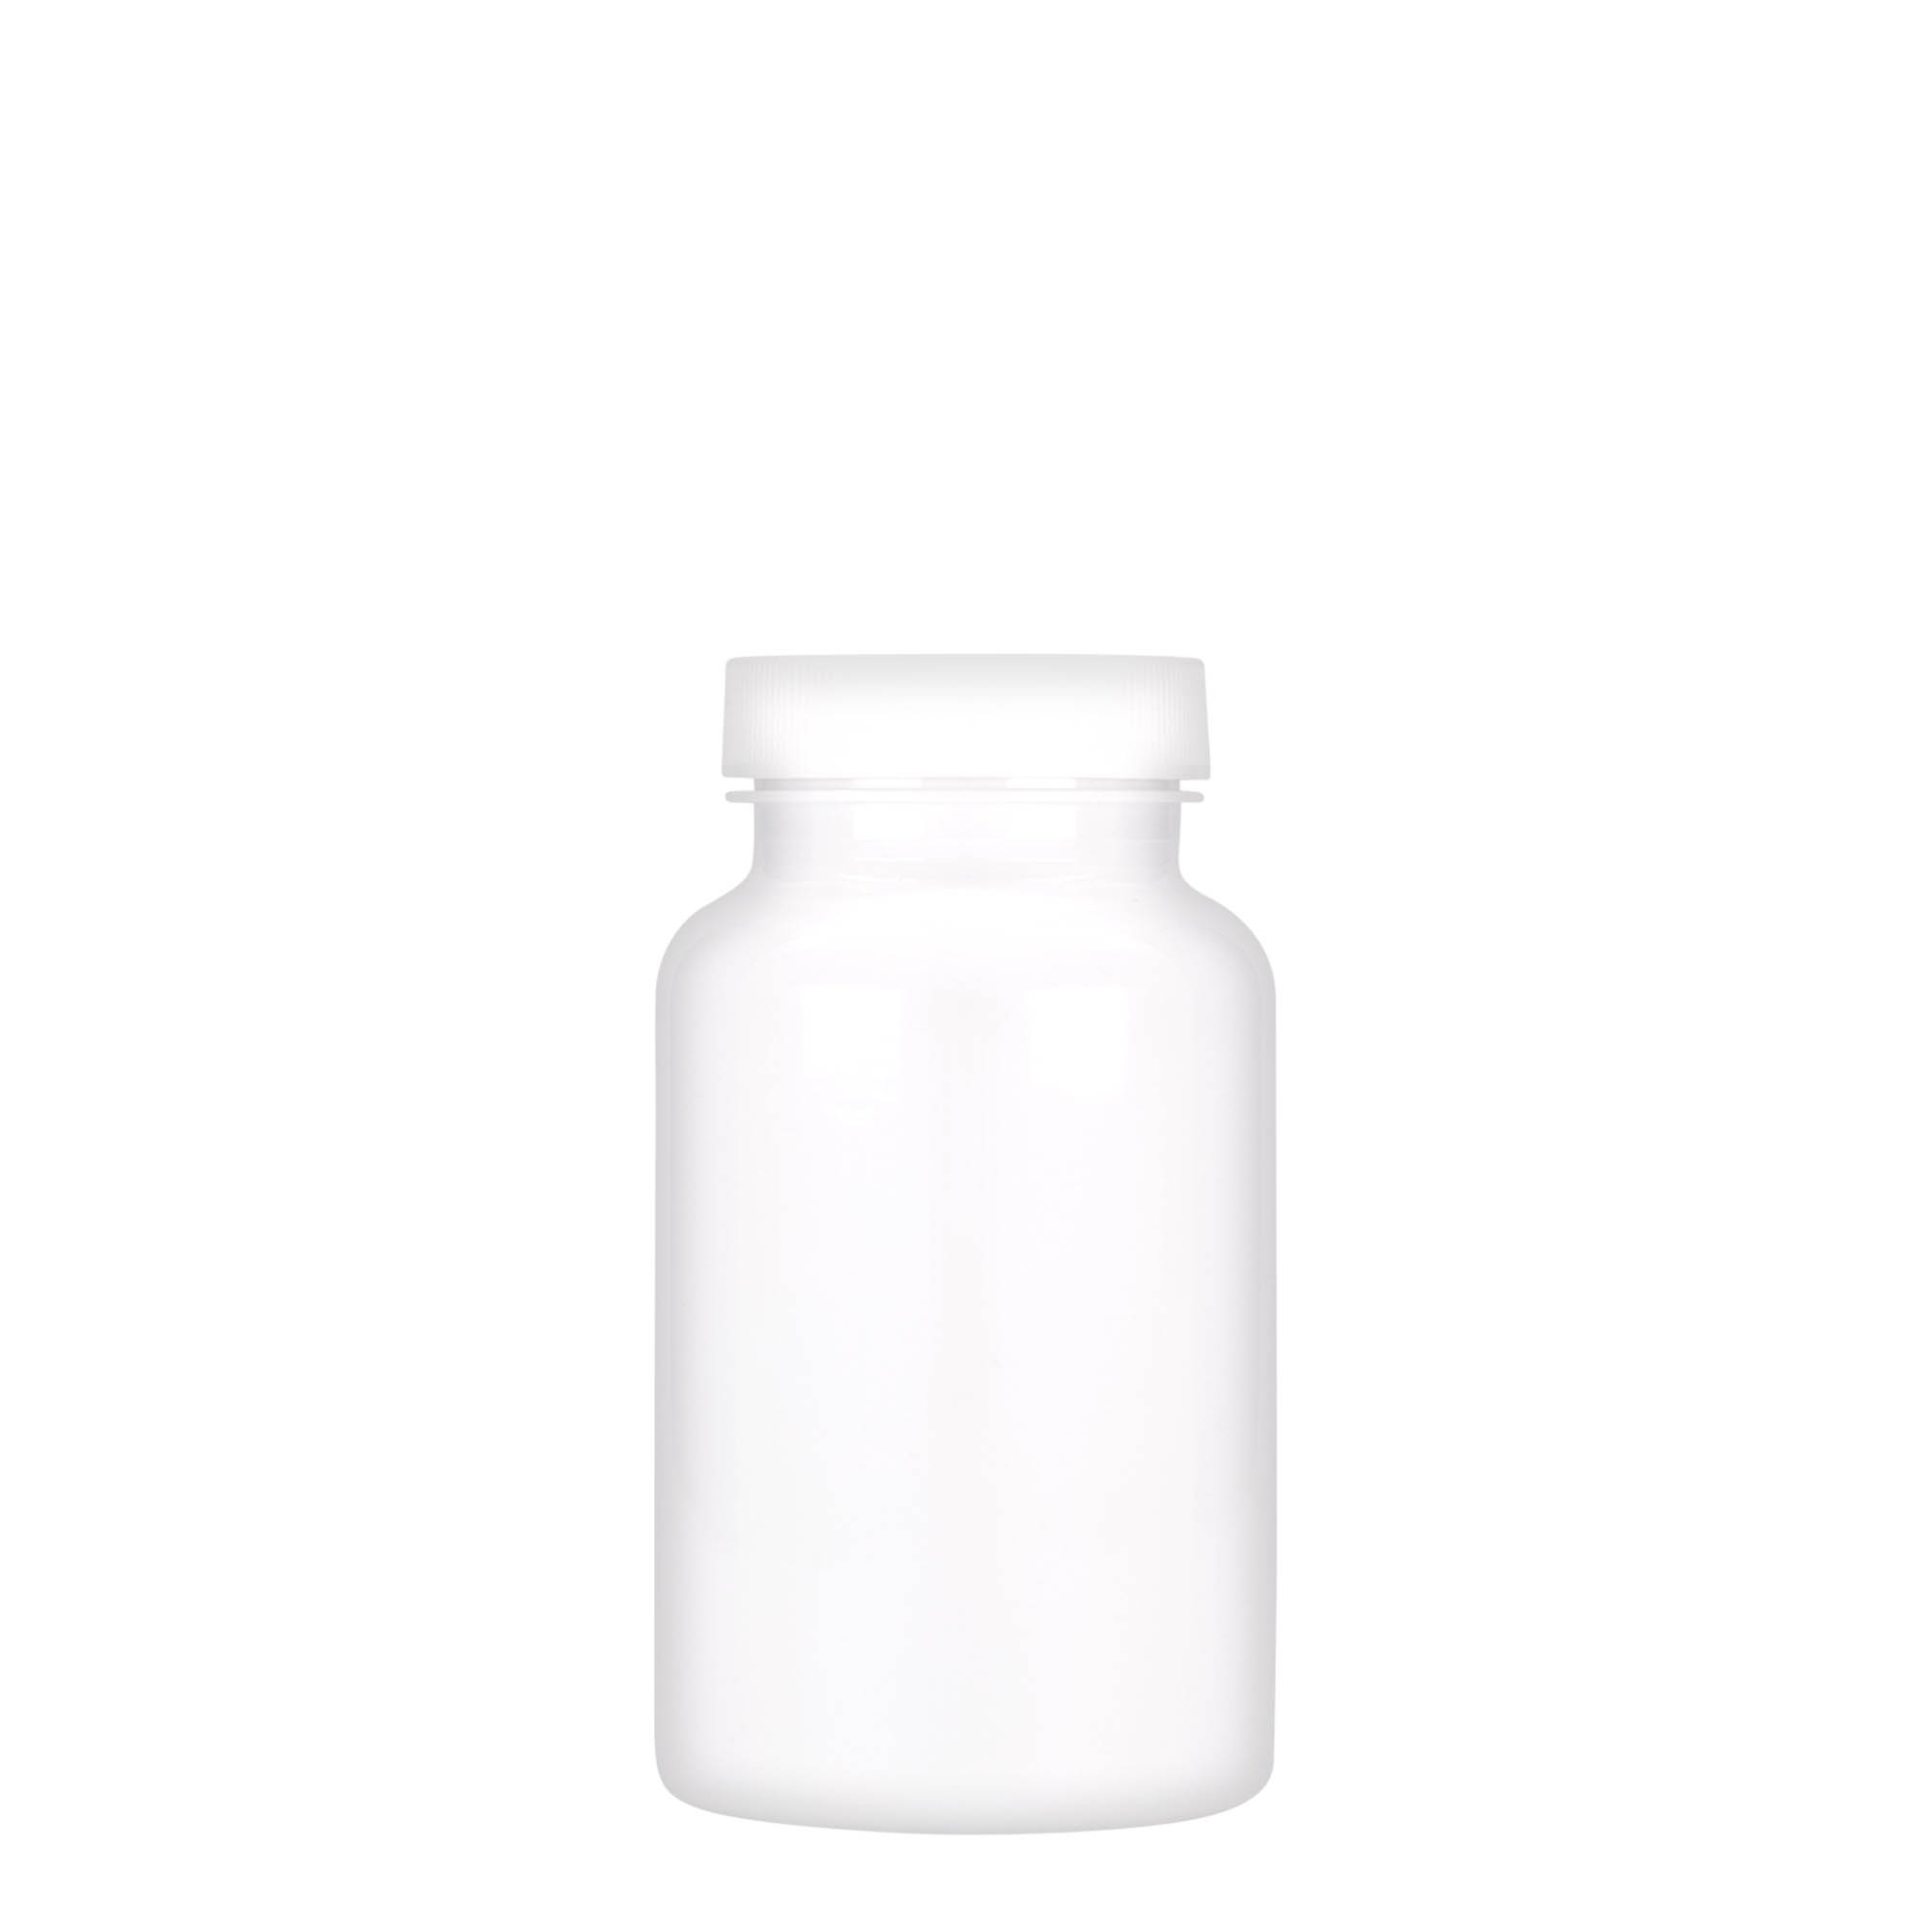 200 ml PET packer, plastic, white, closure: GPI 45/400